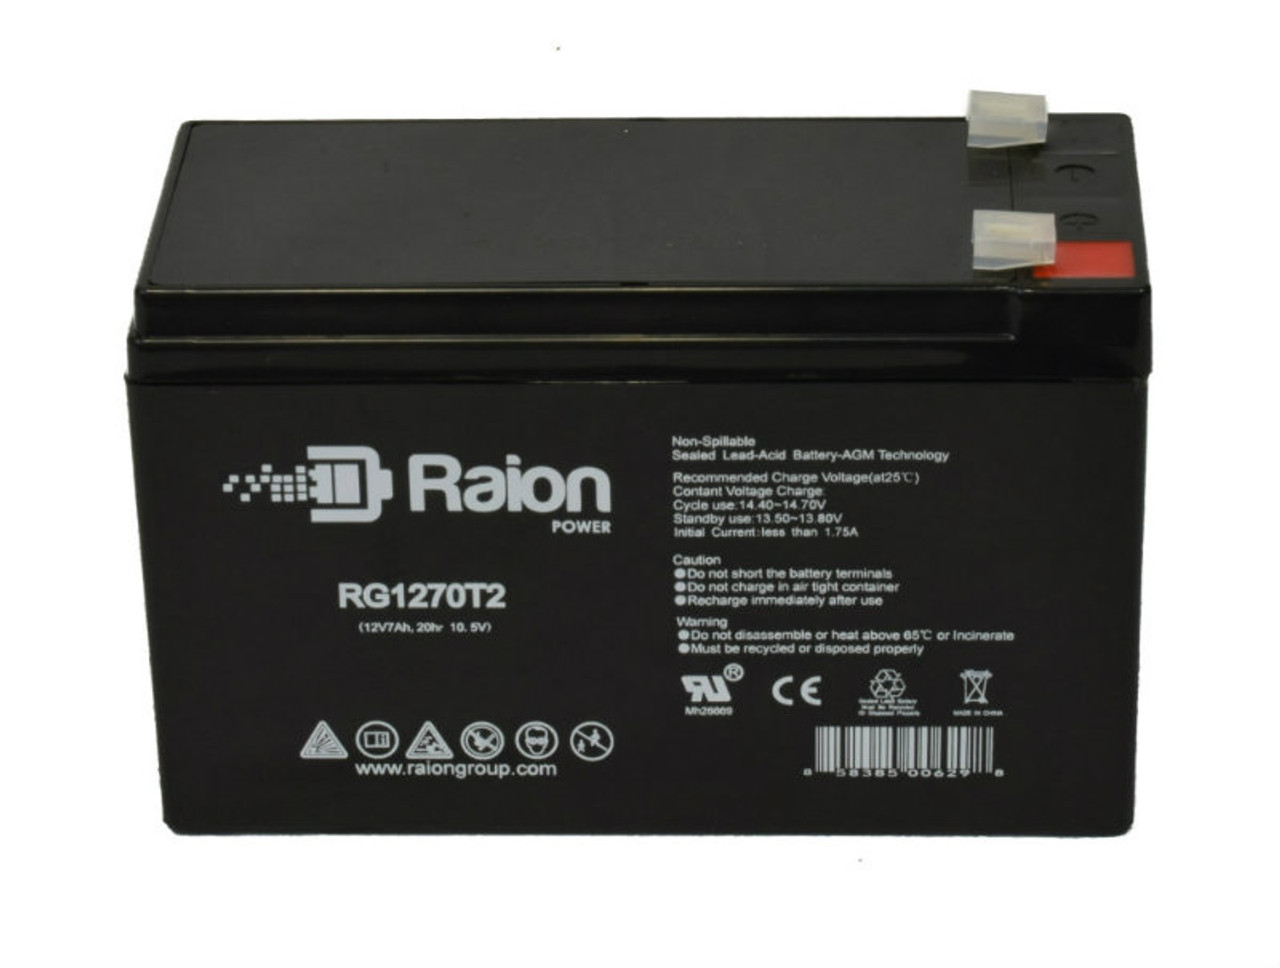 Raion Power RG1270T2 12V 7Ah Lead Acid Battery for Handicare 1000 Outdoor Stairlift